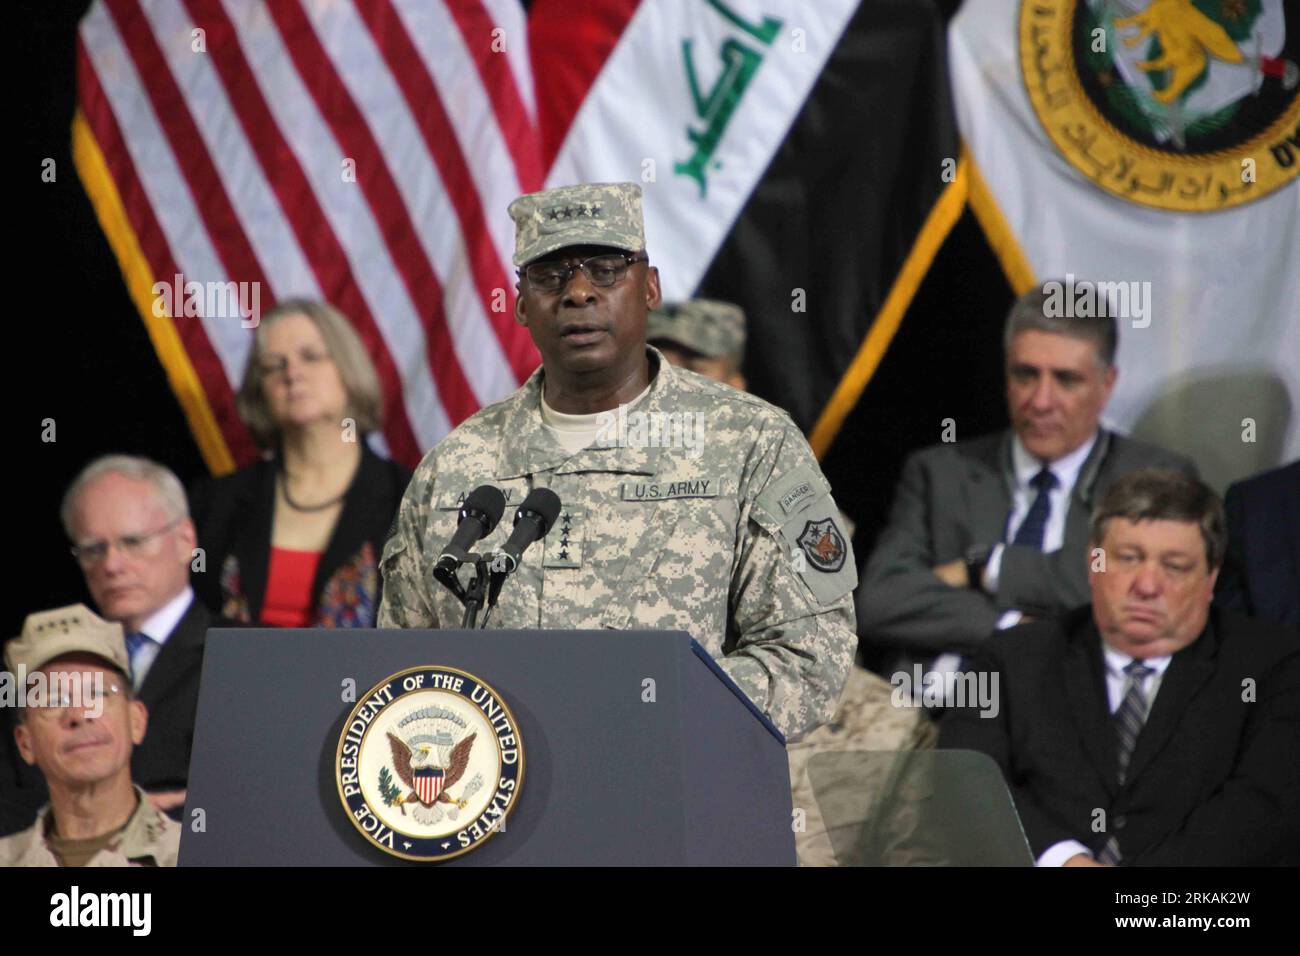 100901 -- BAGDAD, 1. September 2010 Xinhua -- neuer Befehlshaber der US-Streitkräfte im Irak Generalleutnant Lloyd Austin spricht während einer Zeremonie des Befehlswechsels auf der US-Militärbasis Camp Victory in Bagdad, Irak, 1. September 2010. US-Vizepräsident Joe Biden sagte am Mittwoch, dass die US-Streitkräfte eine neue Beratungs- und Unterstützungsmission im Irak begonnen haben, einen Tag nachdem US-Präsident Barack Obama das Ende der US-Kampfmission in dem Land angekündigt hatte. Xinhua/Xu Yanyan zw IRAQ-BAGDAD-U.S. KRAFTWECHSEL DES BEFEHLS PUBLICATIONXNOTXINXCHN Stockfoto